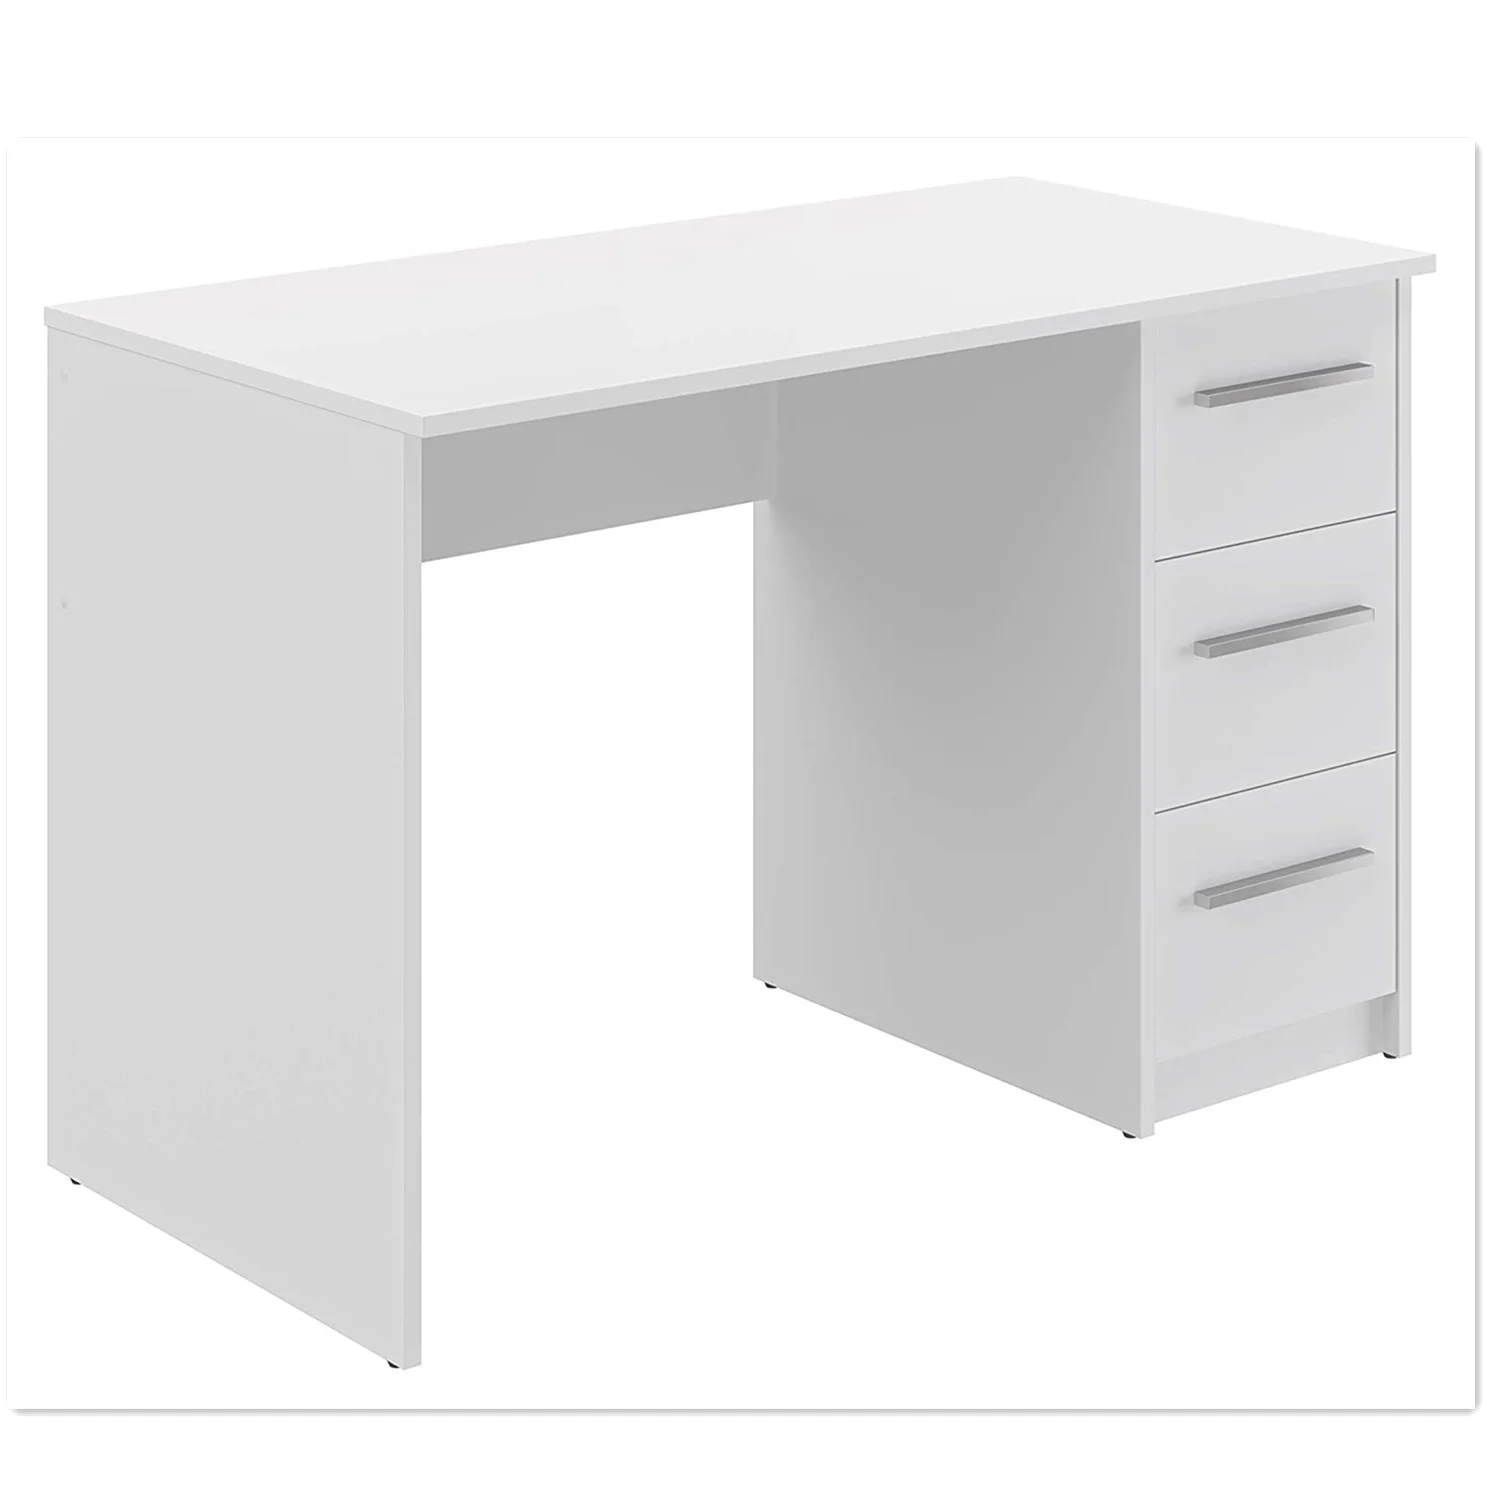 Стол высотой 90 см. Письменный стол икеа 120 на 60 белый. Компьютерный стол Skyland CD 7045, 70х45х75 см. Белый письменный стол МД66.6.150. Стол письменный White Club Snake 150x70cm.